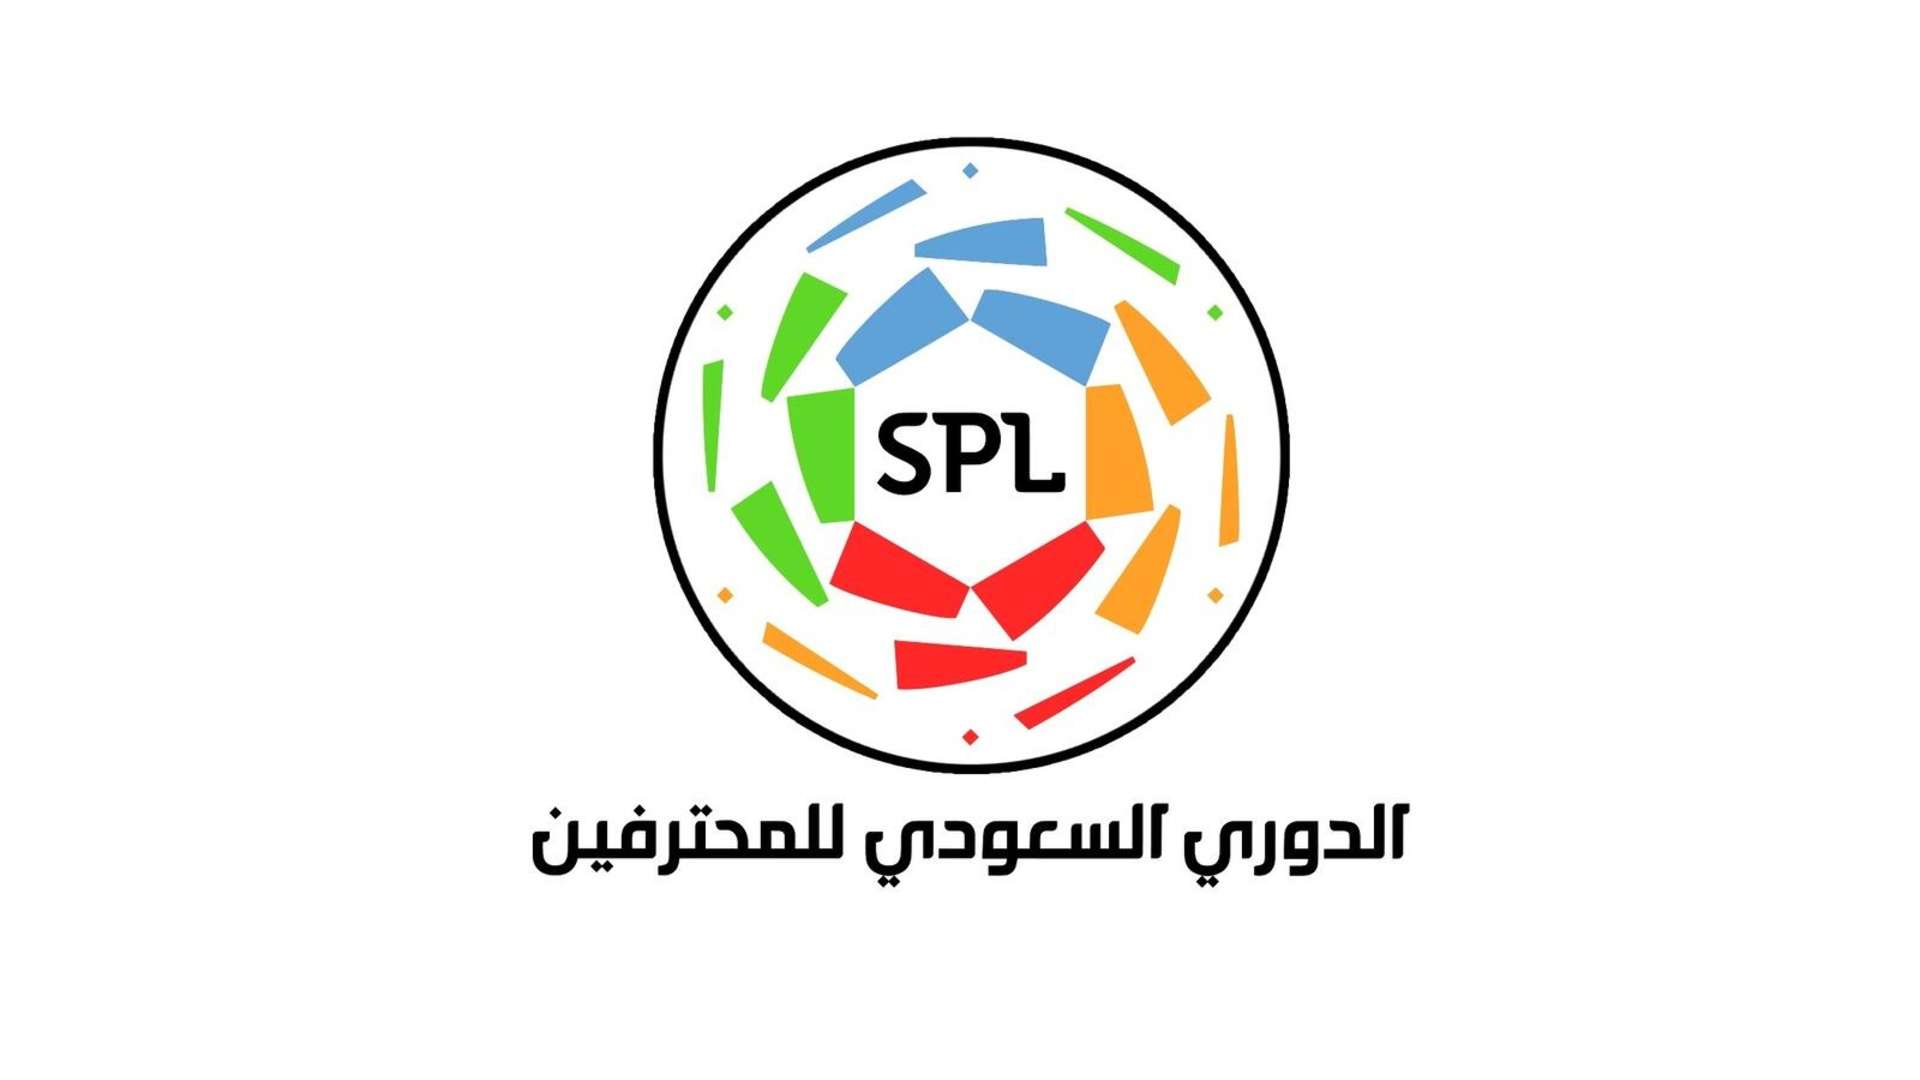 Mohamed bin Salman League Cup - Saudi Pro League الدوري السعودي للمحترفين - دوري كأس الأمير محمد بن سلمان